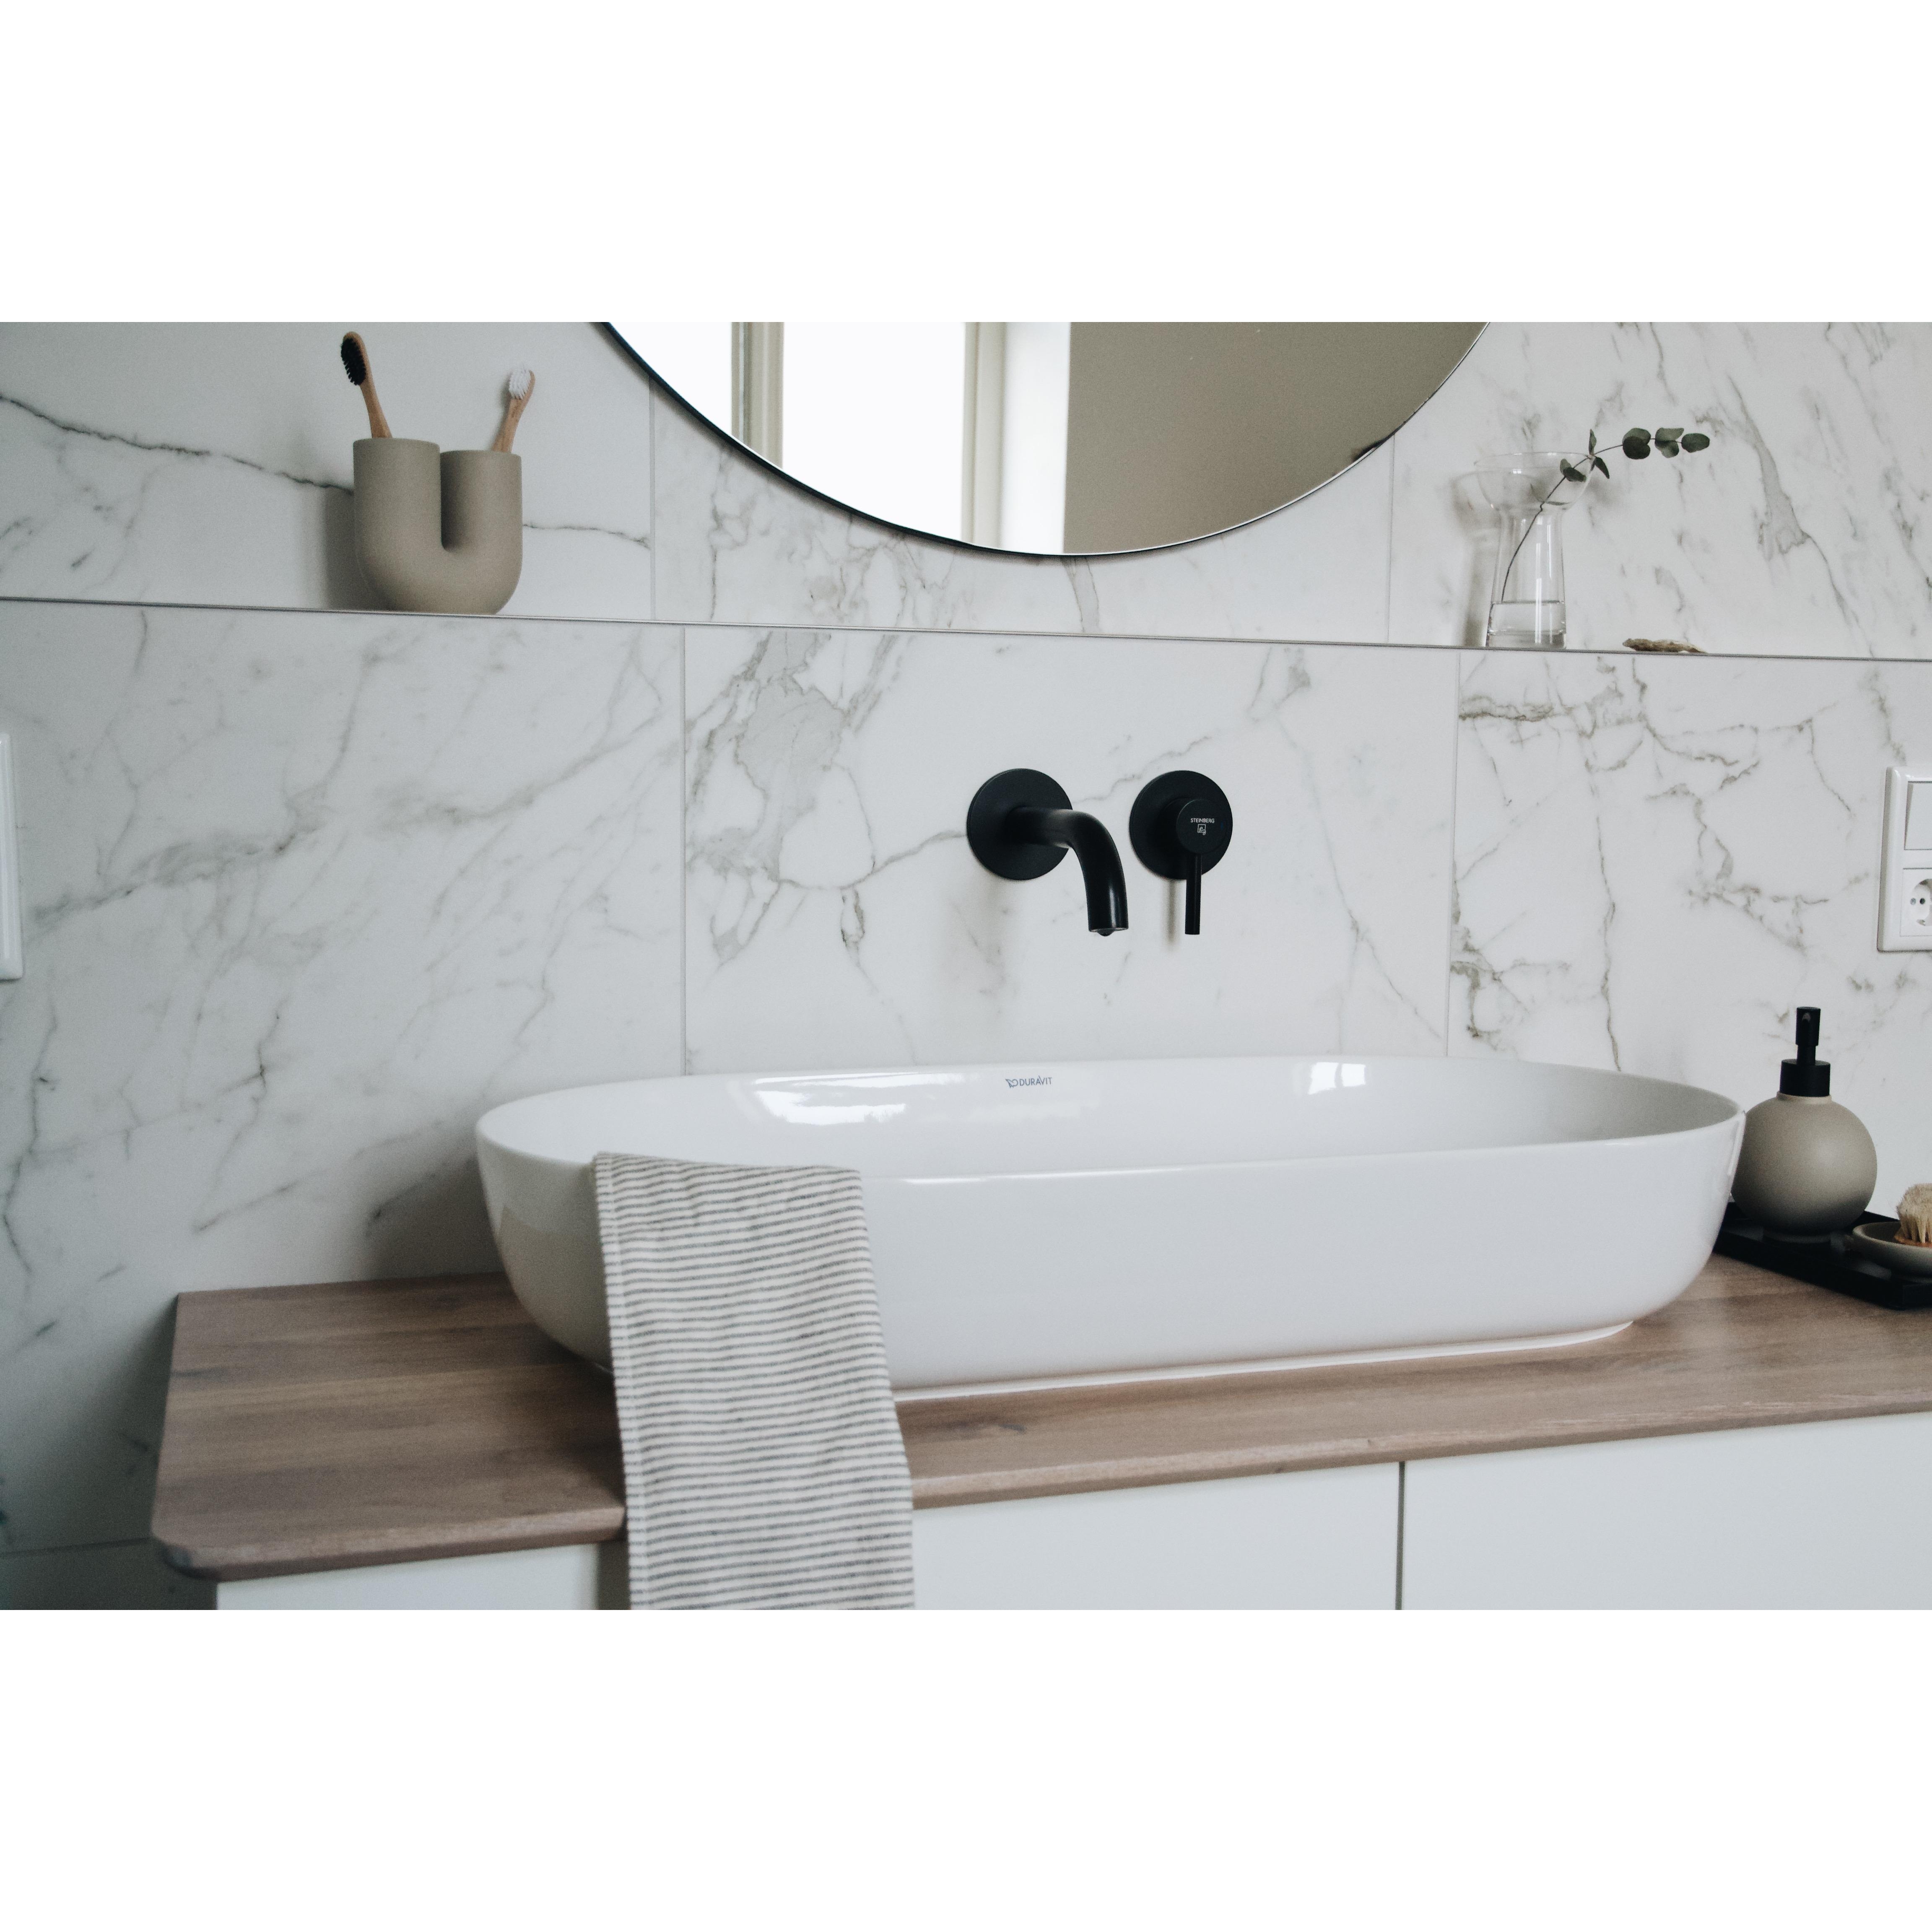 Waschtisch mit Echtholzplatte #DIY #neuhier #marmor #schwarzearmaturen #altbau #altbauliebe #badezimmer #badezimmerdeko